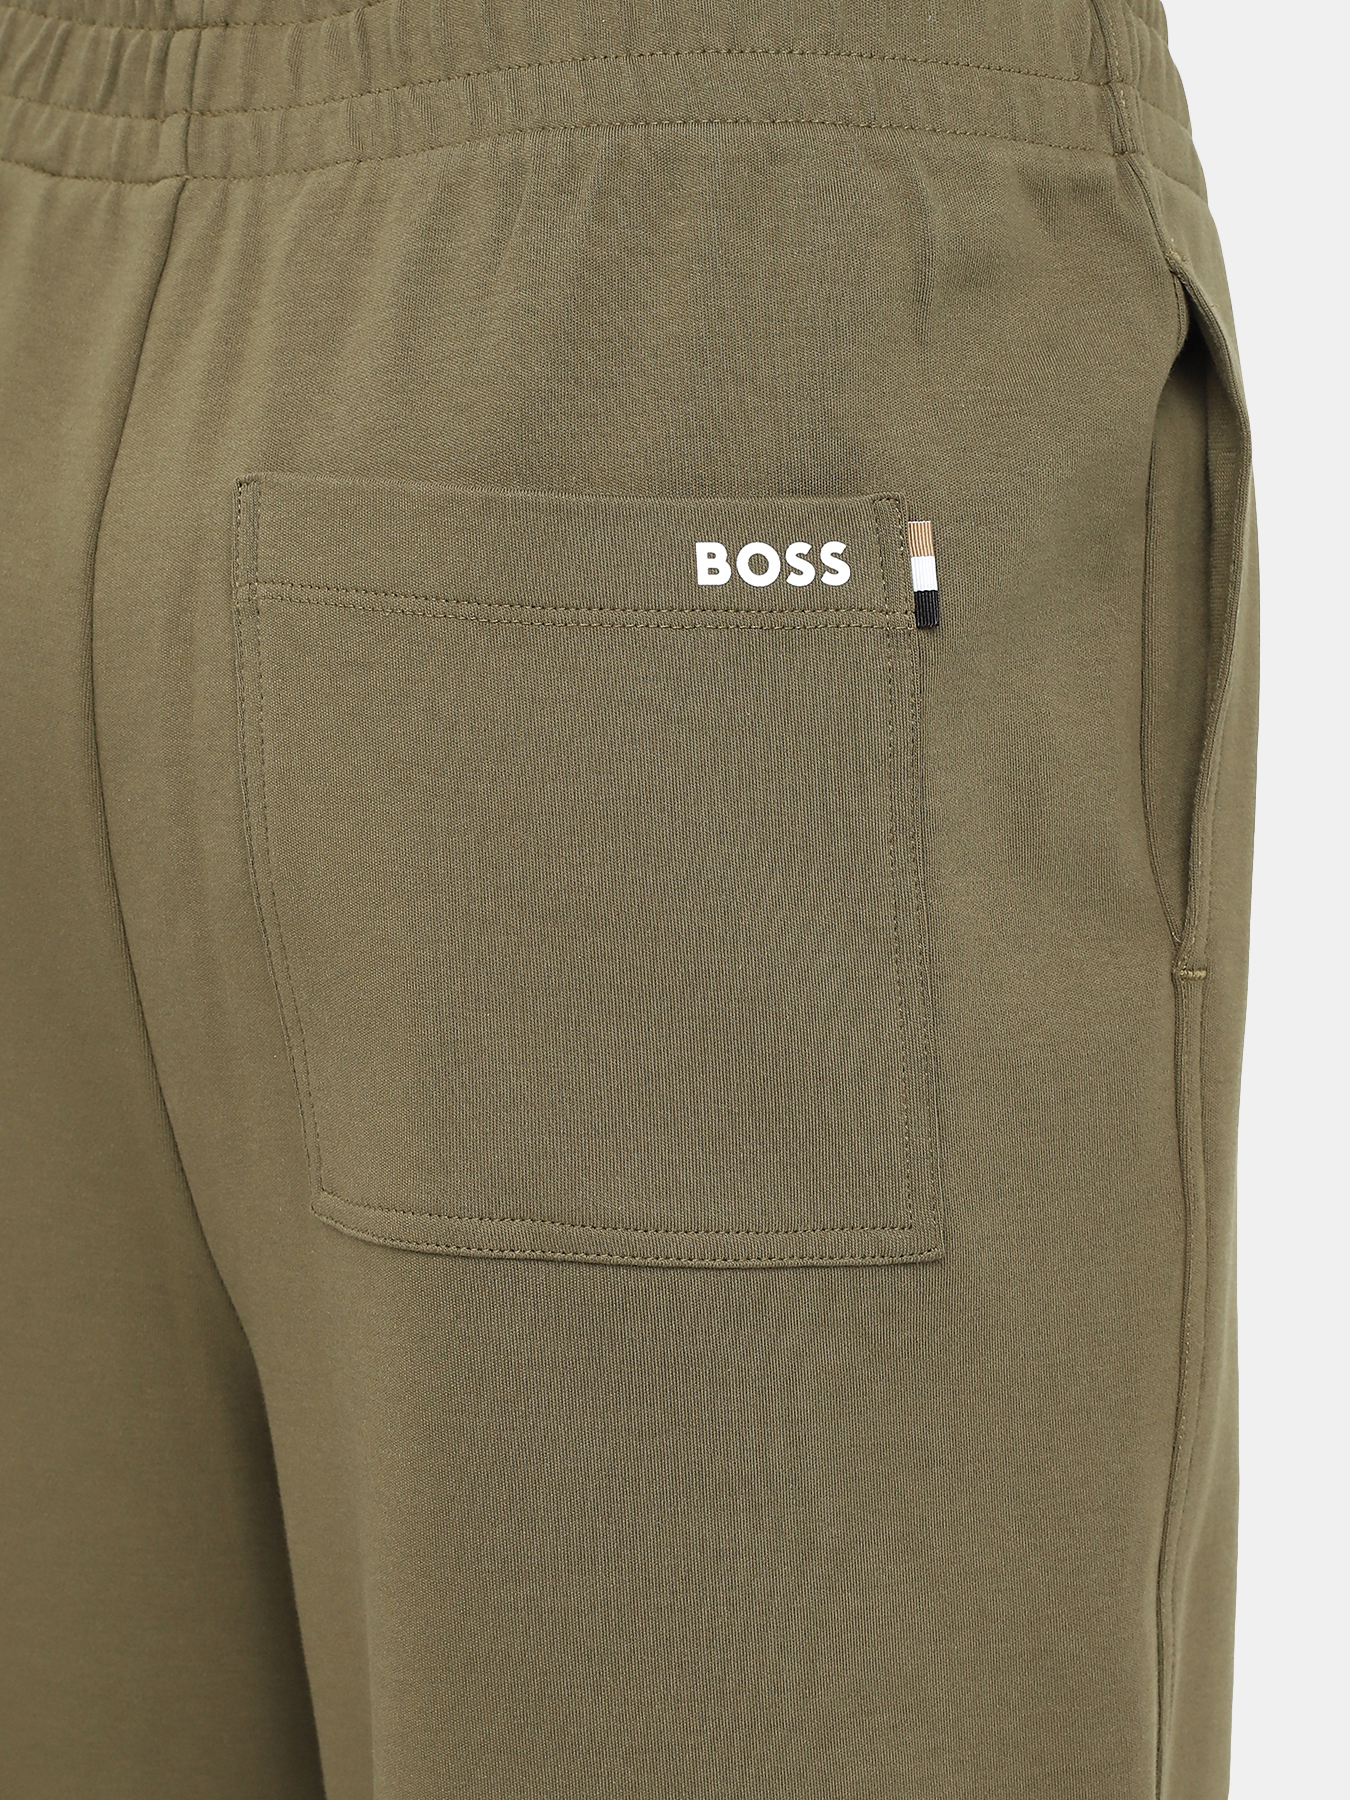 Спортивные брюки Enatea BOSS 414132-041, цвет хаки, размер 40-42 - фото 4